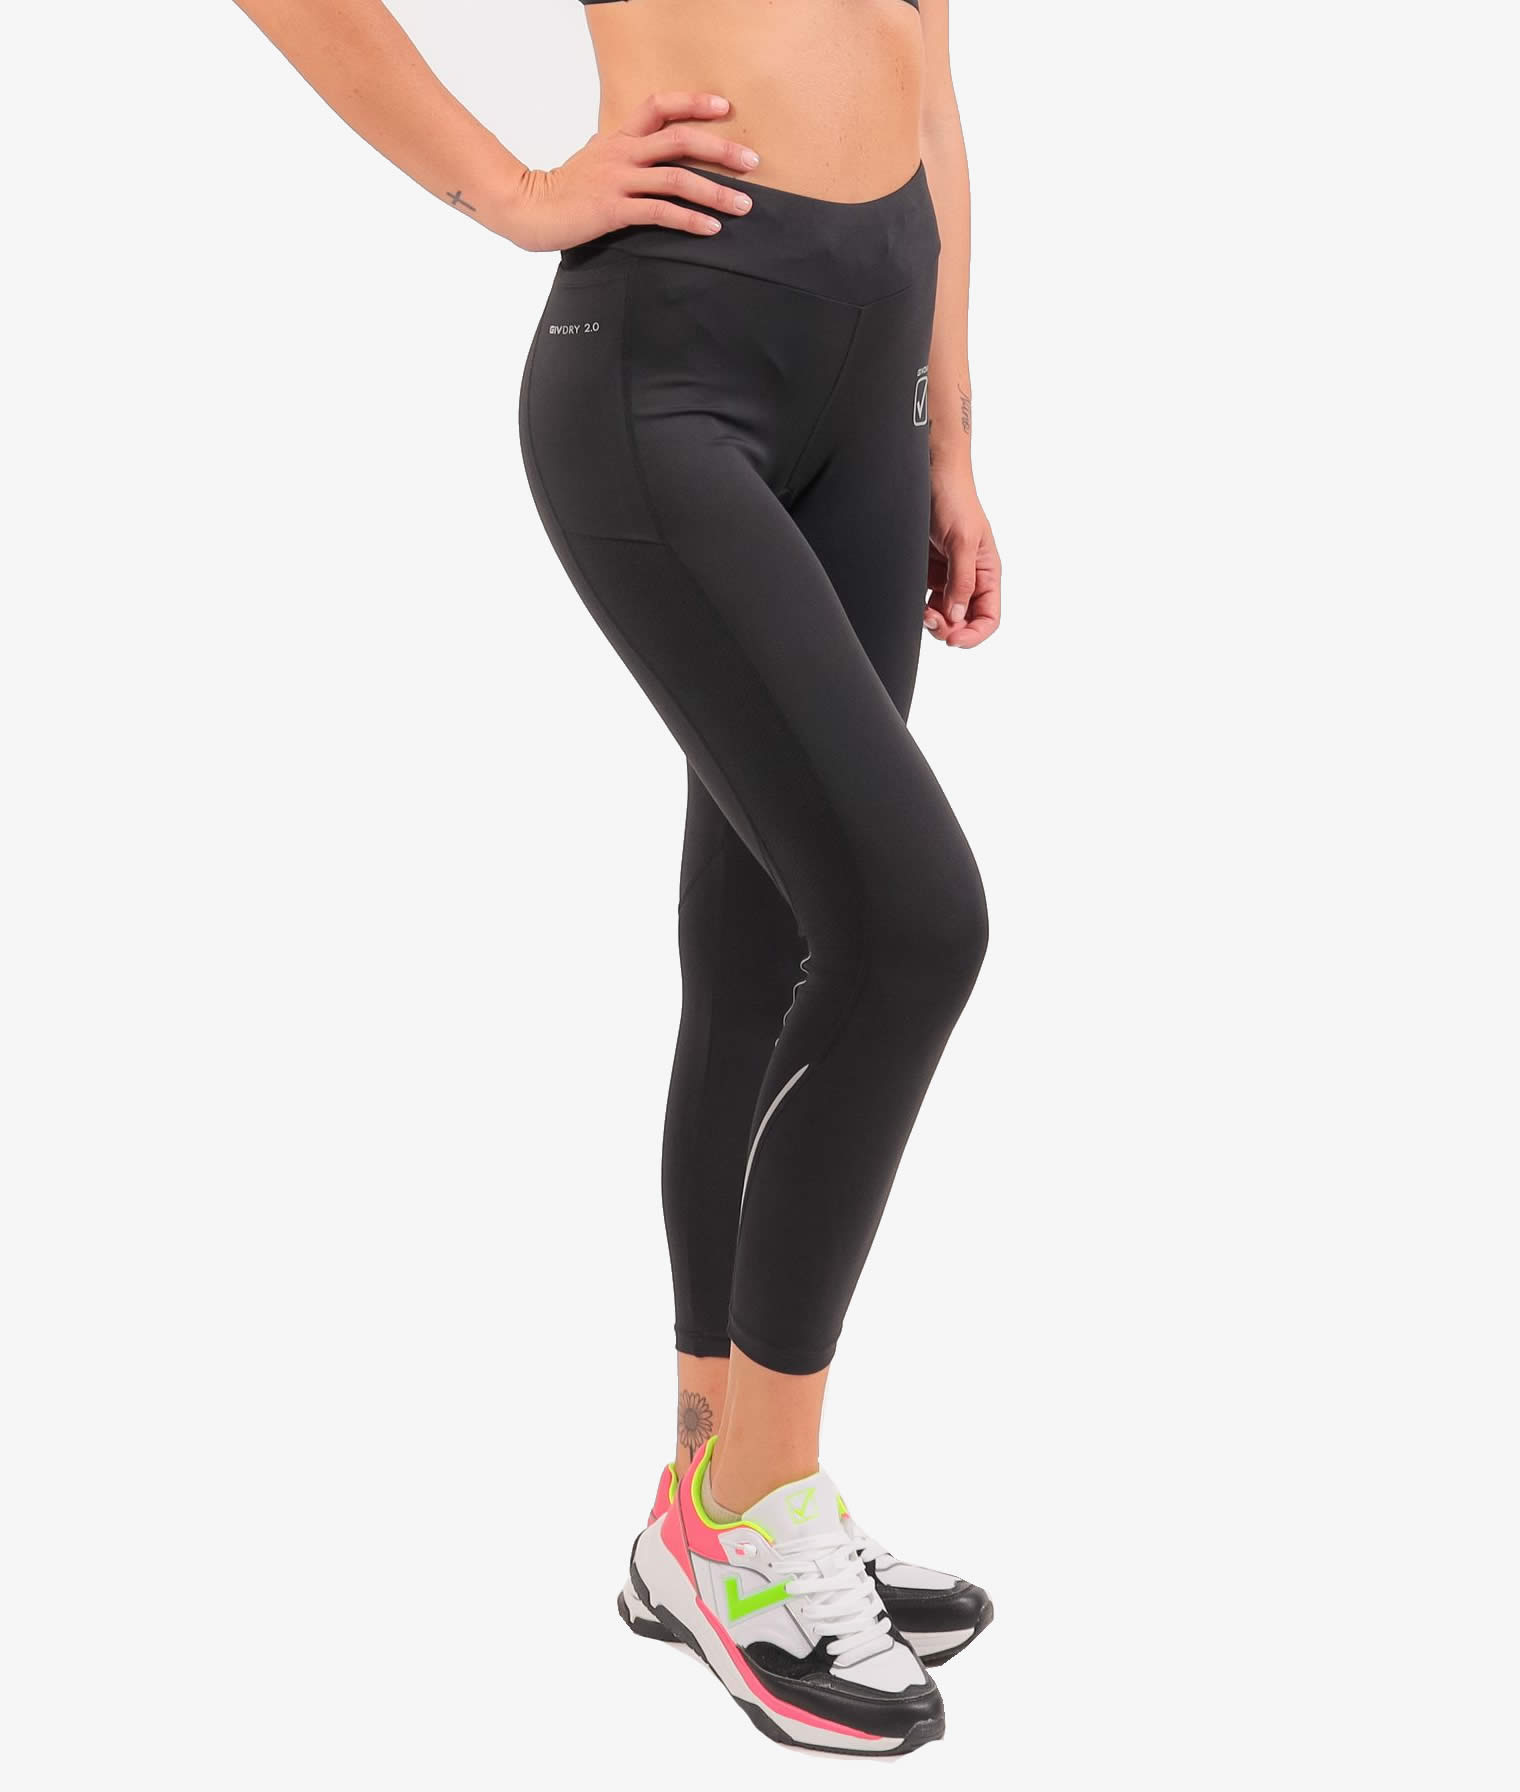 Givova Top de traje deportivo para mujer + leggings: a la venta a 19.99€ en